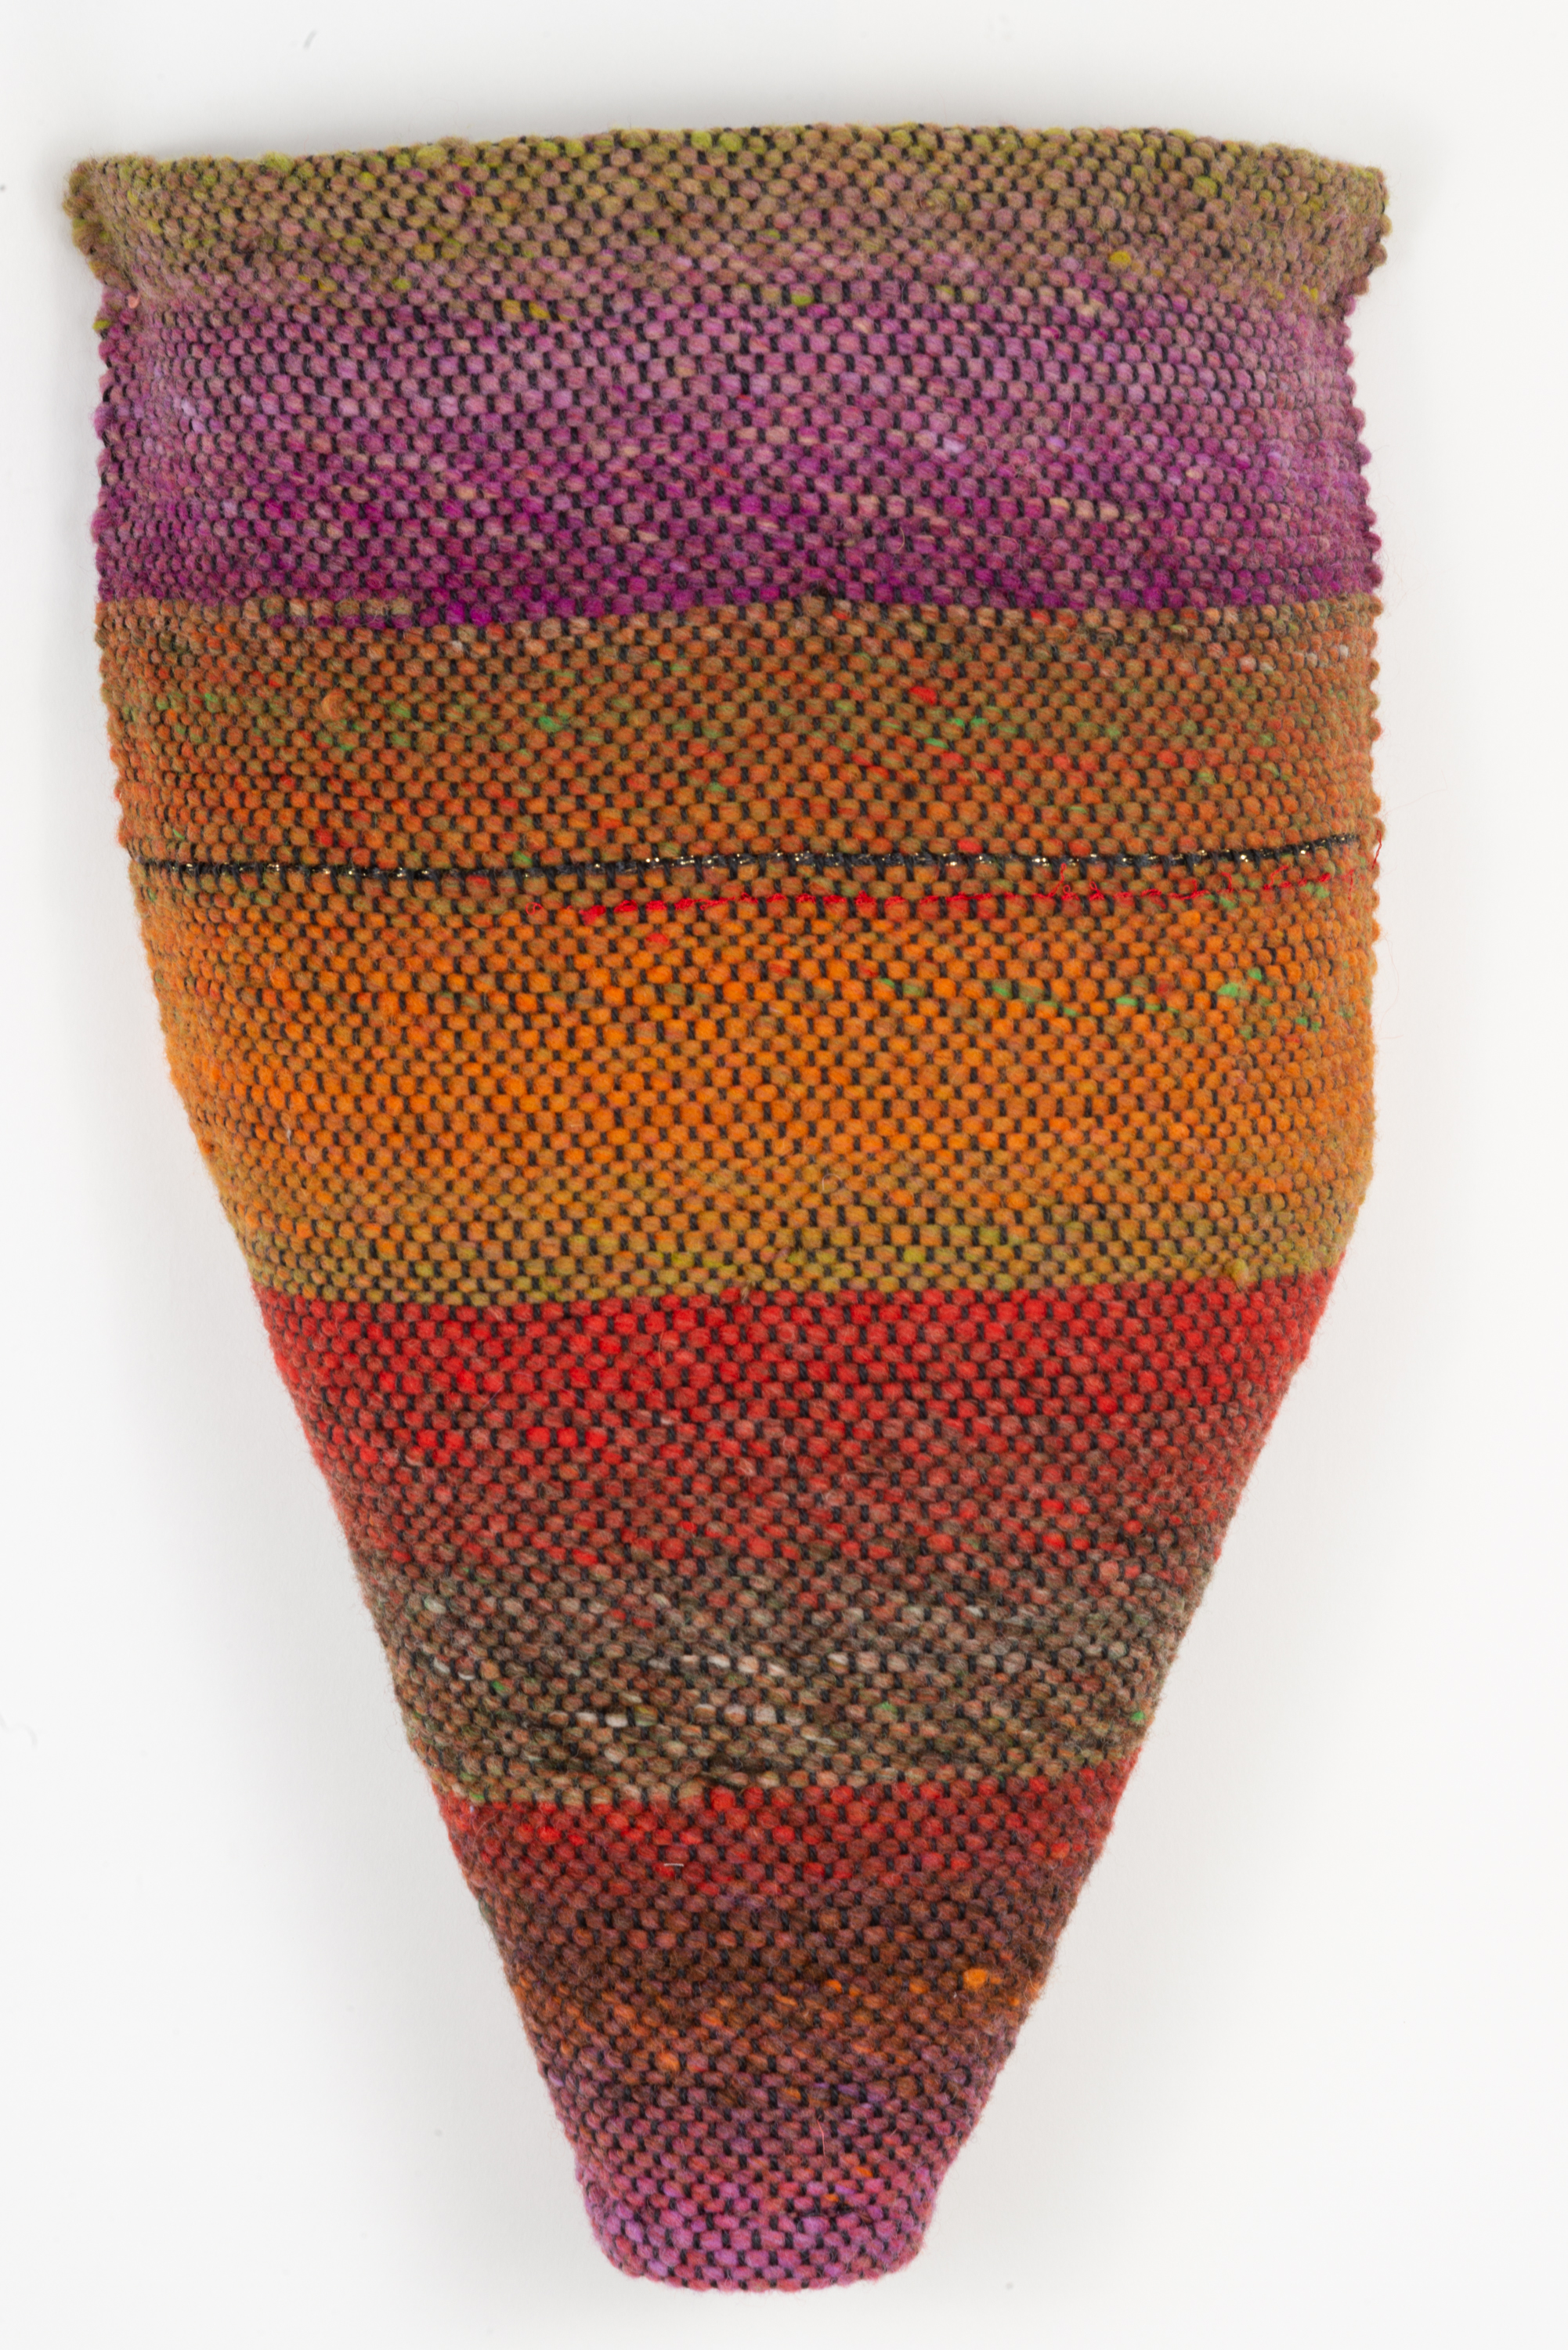  Sylvia Vander Sluis,  Earthy Torso 2,  Handwoven wool, 17x14x4 